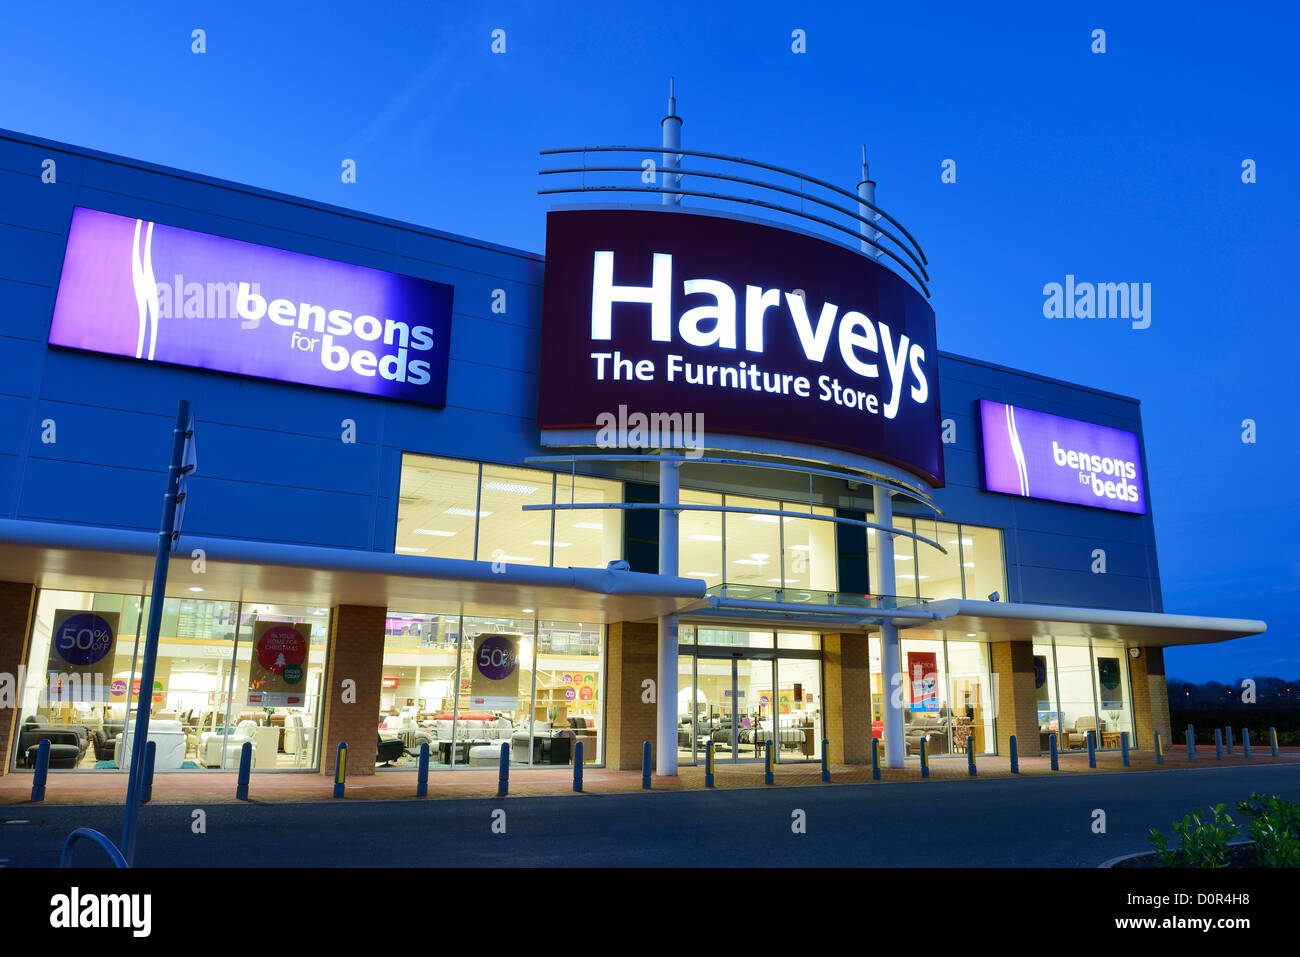 Harveys Furniture Store e della Bensons per letti Foto Stock